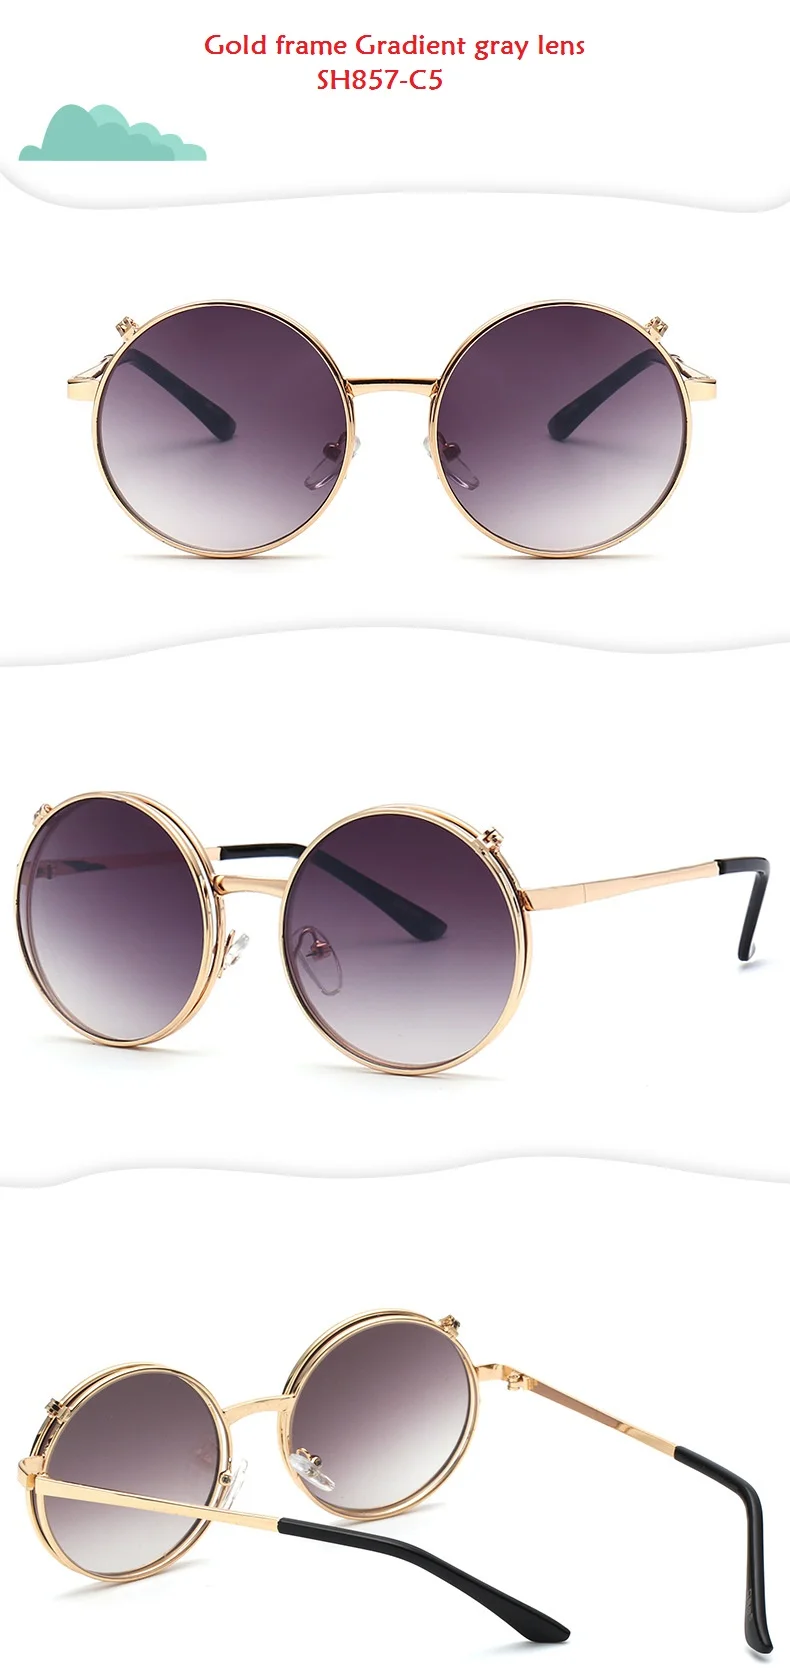 SOLO TU/модные круглые солнцезащитные очки для маленьких мальчиков и девочек; фирменный дизайн; легкие удобные очки; UV400-Proof